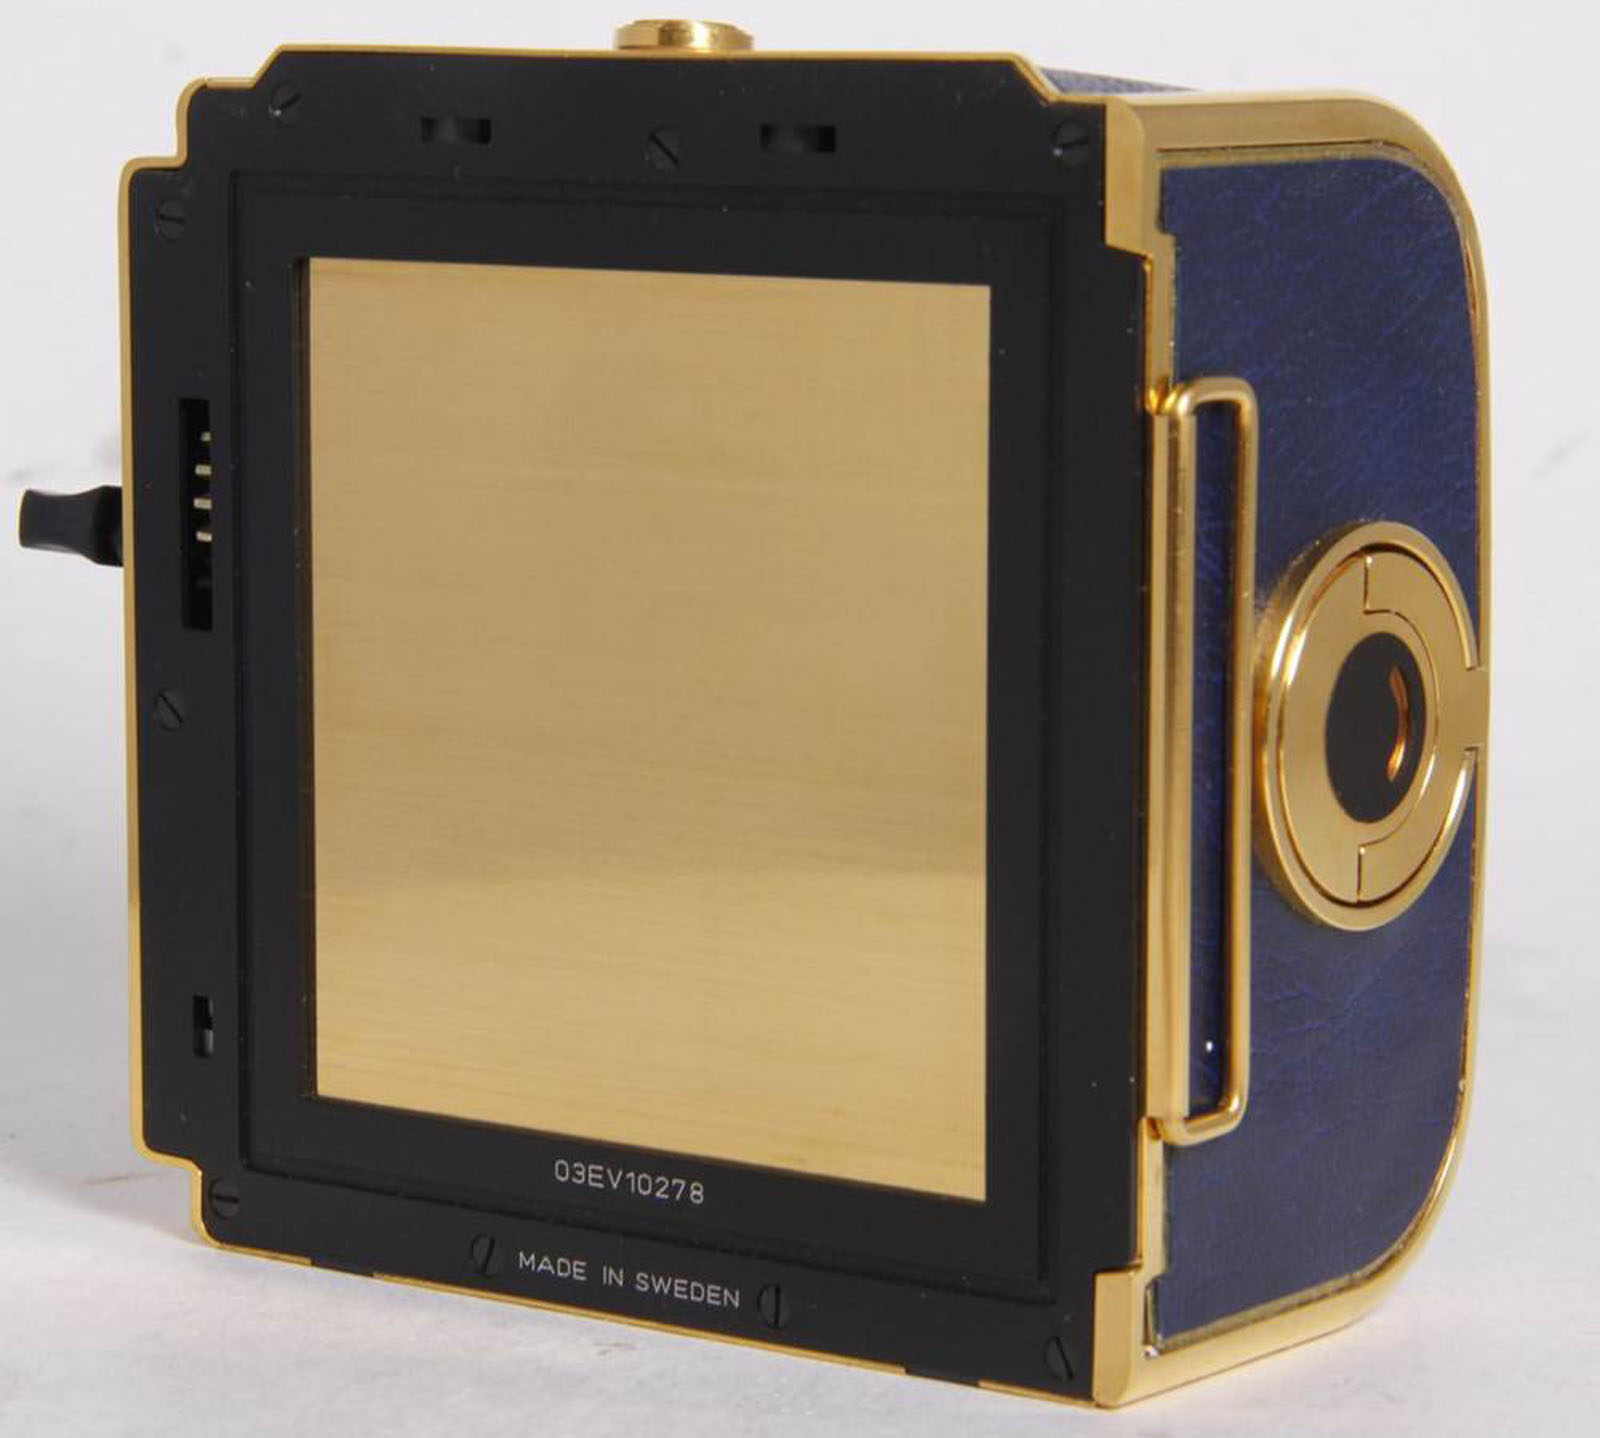 Hasselblad 503 CX Golden Blue Limited Edition camera, medium-format film camera 